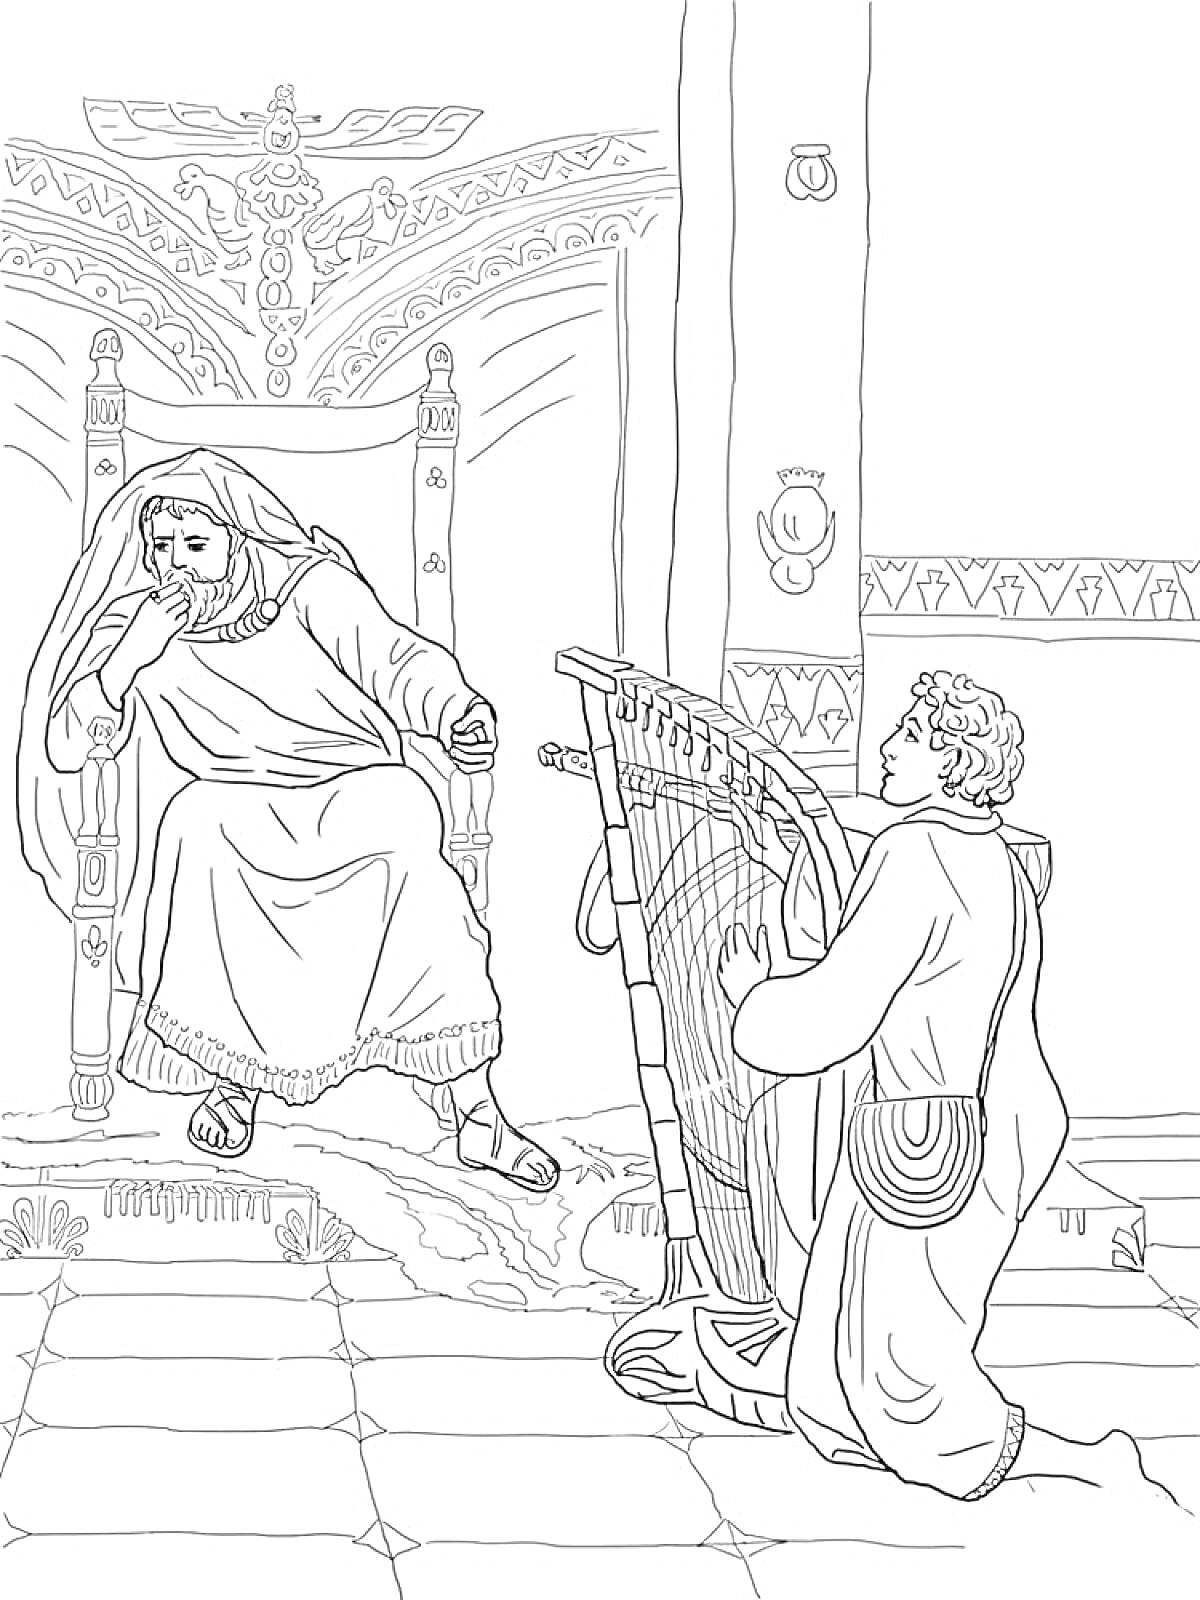 Владыка на троне и музыкант с арфой в дворцовом интерьере